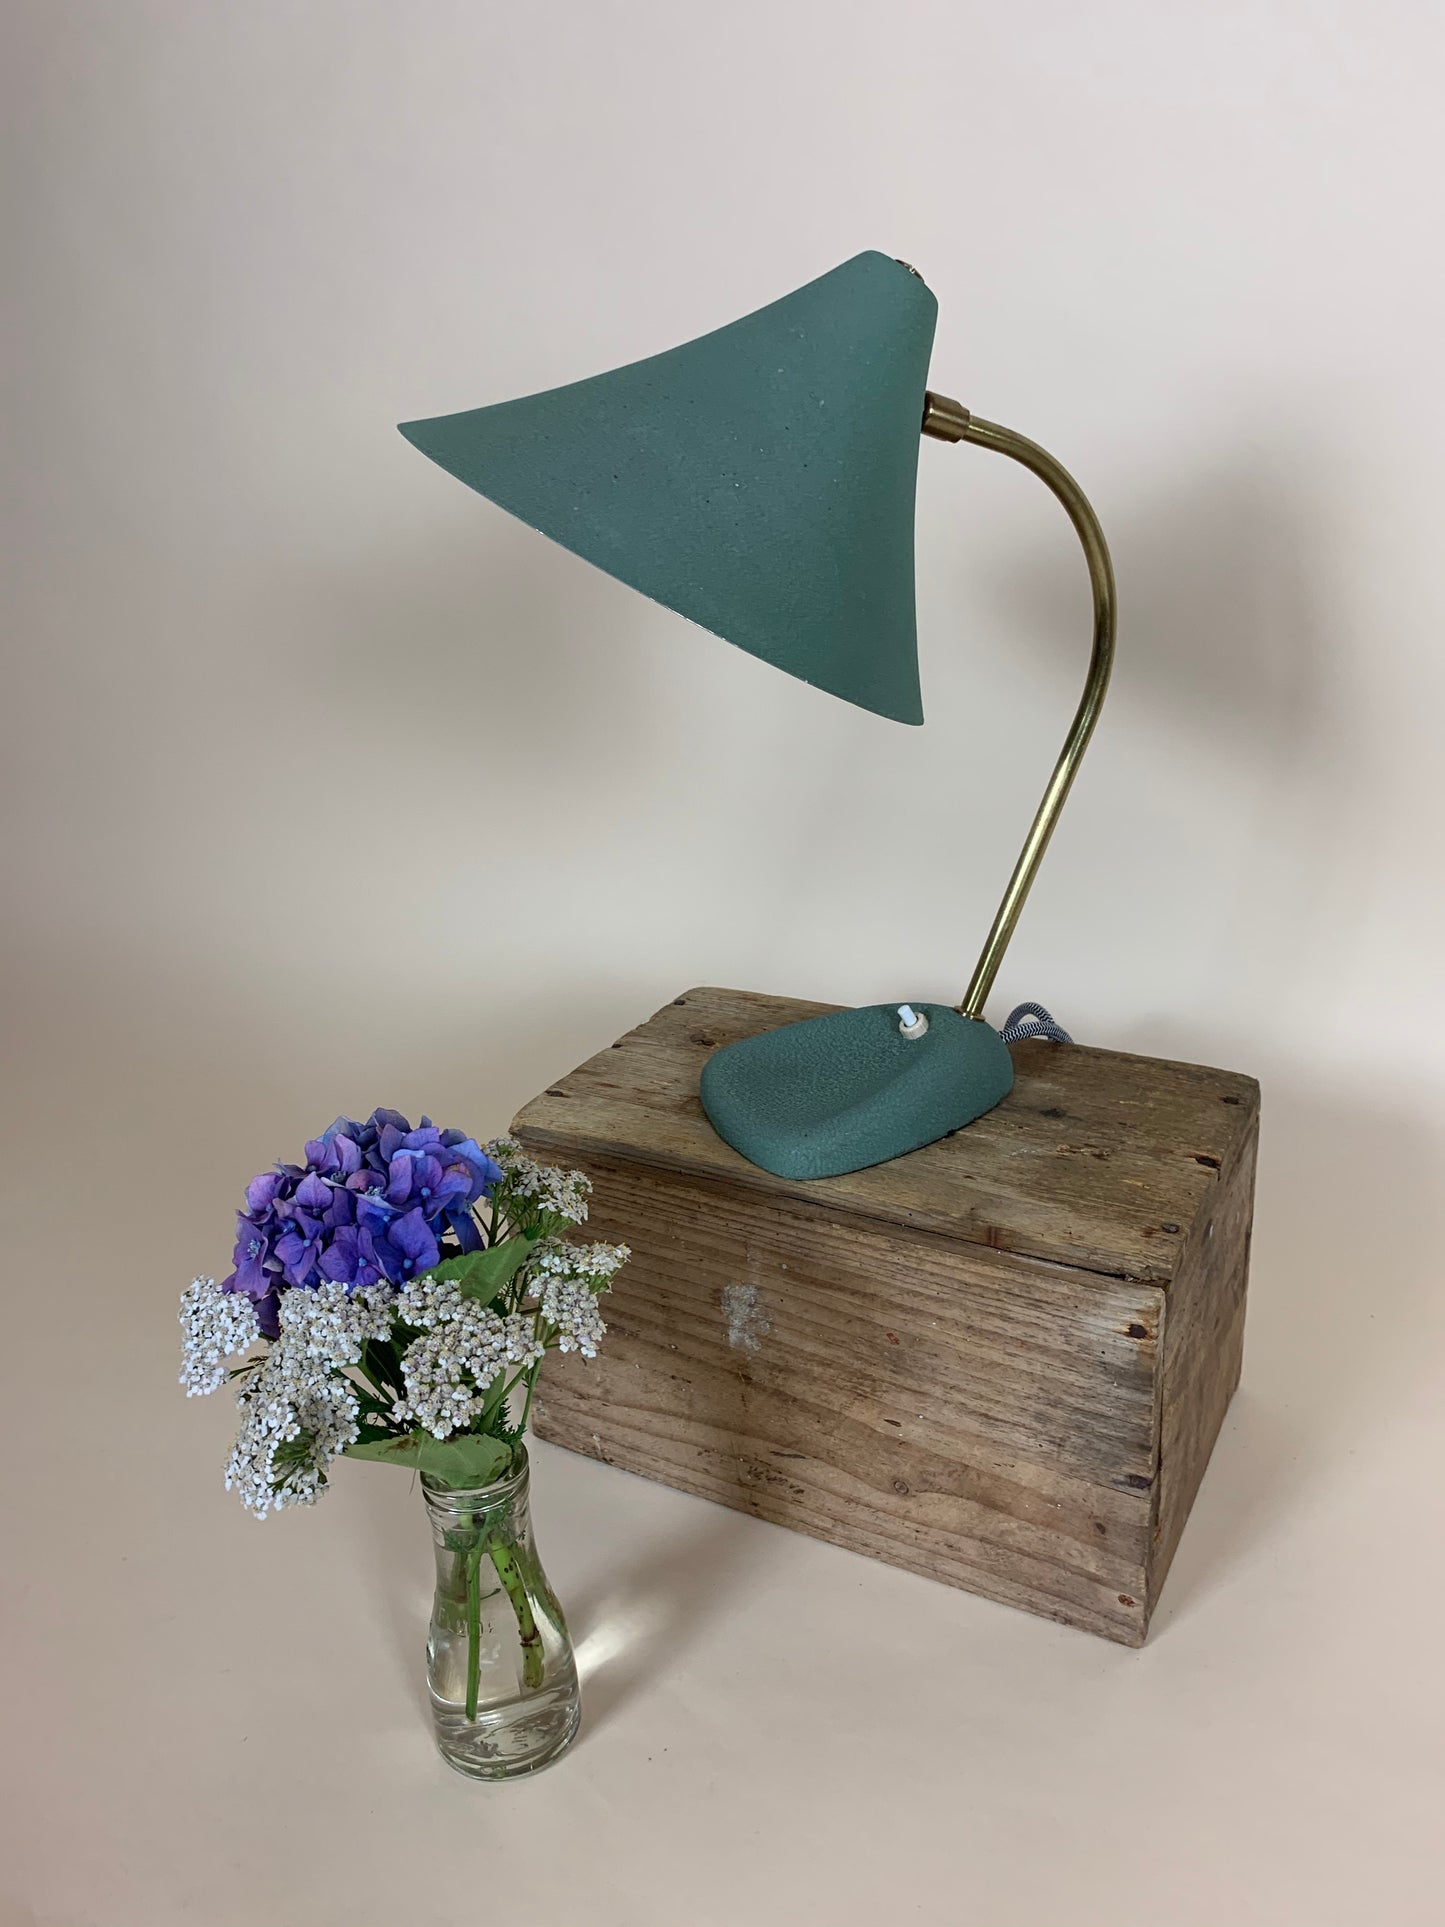 Schöne kleine Louis Kalff Vintage Lampe in Grün mit Messing